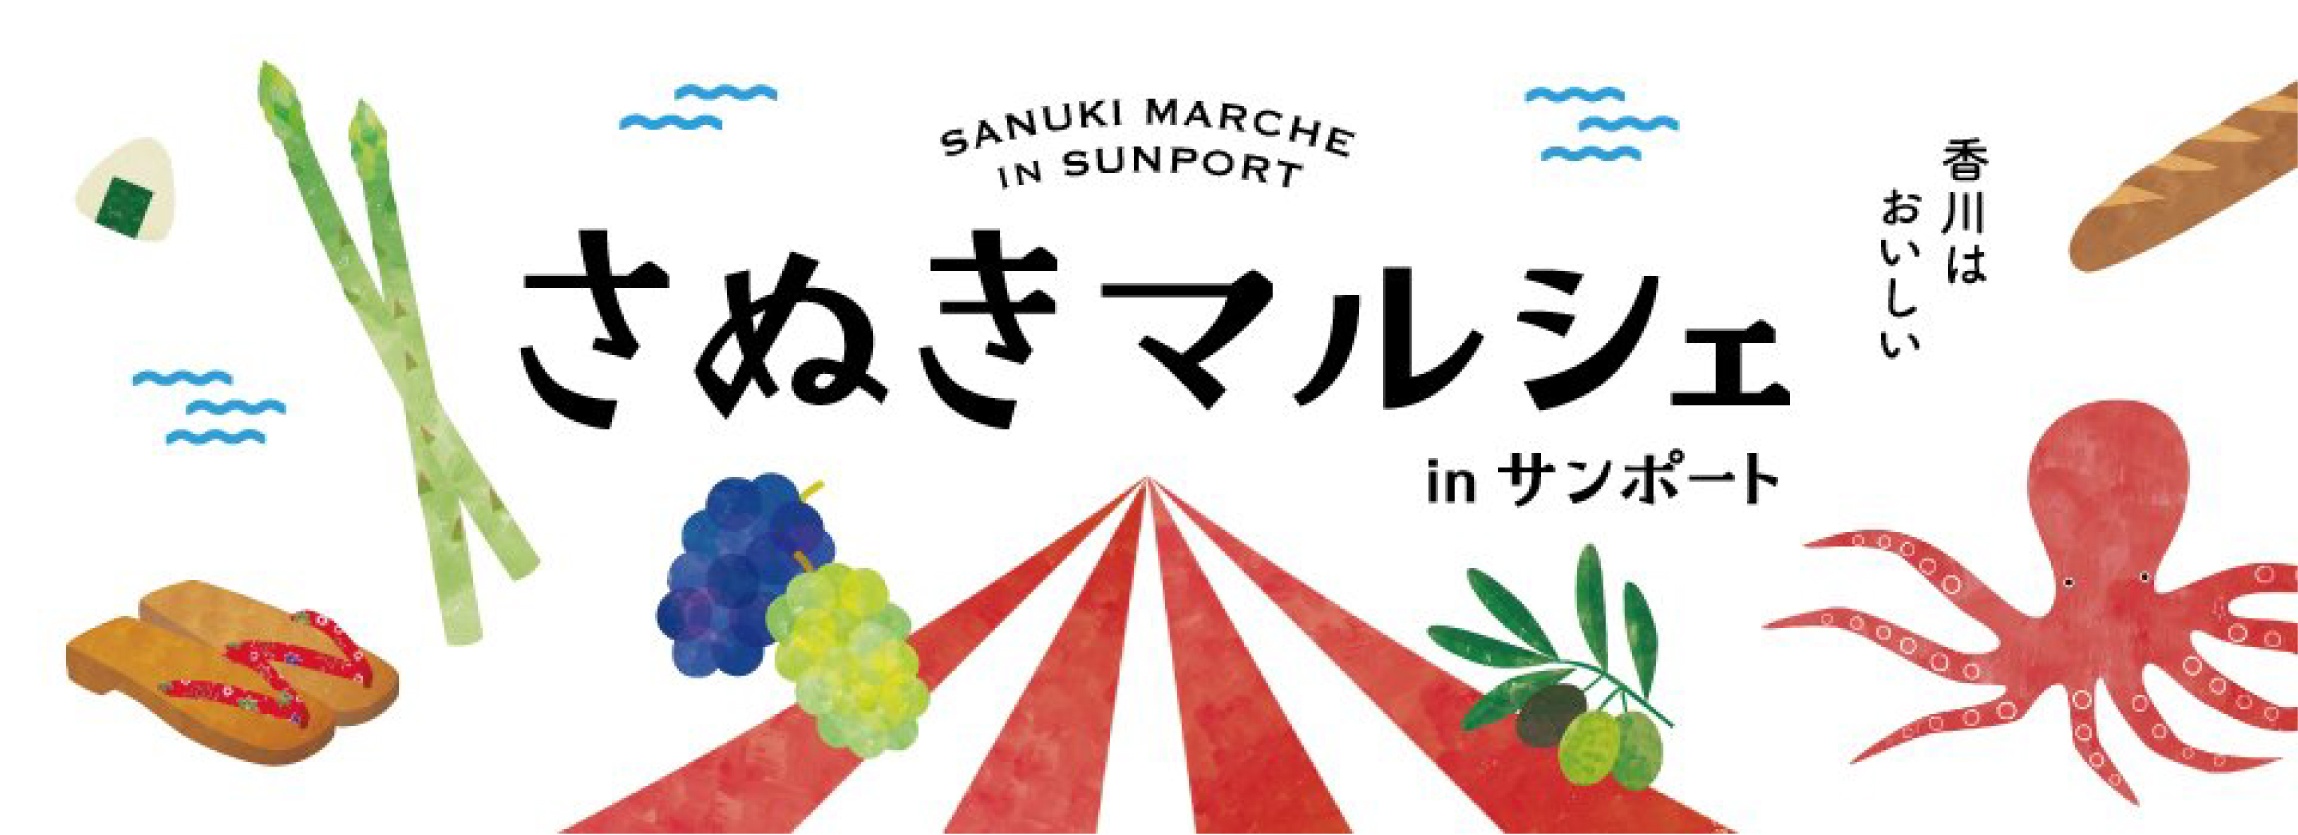 SANUKI MARCHE IN SUNPORT Sanuki Marche ใน Sunport Kagawa อร่อย